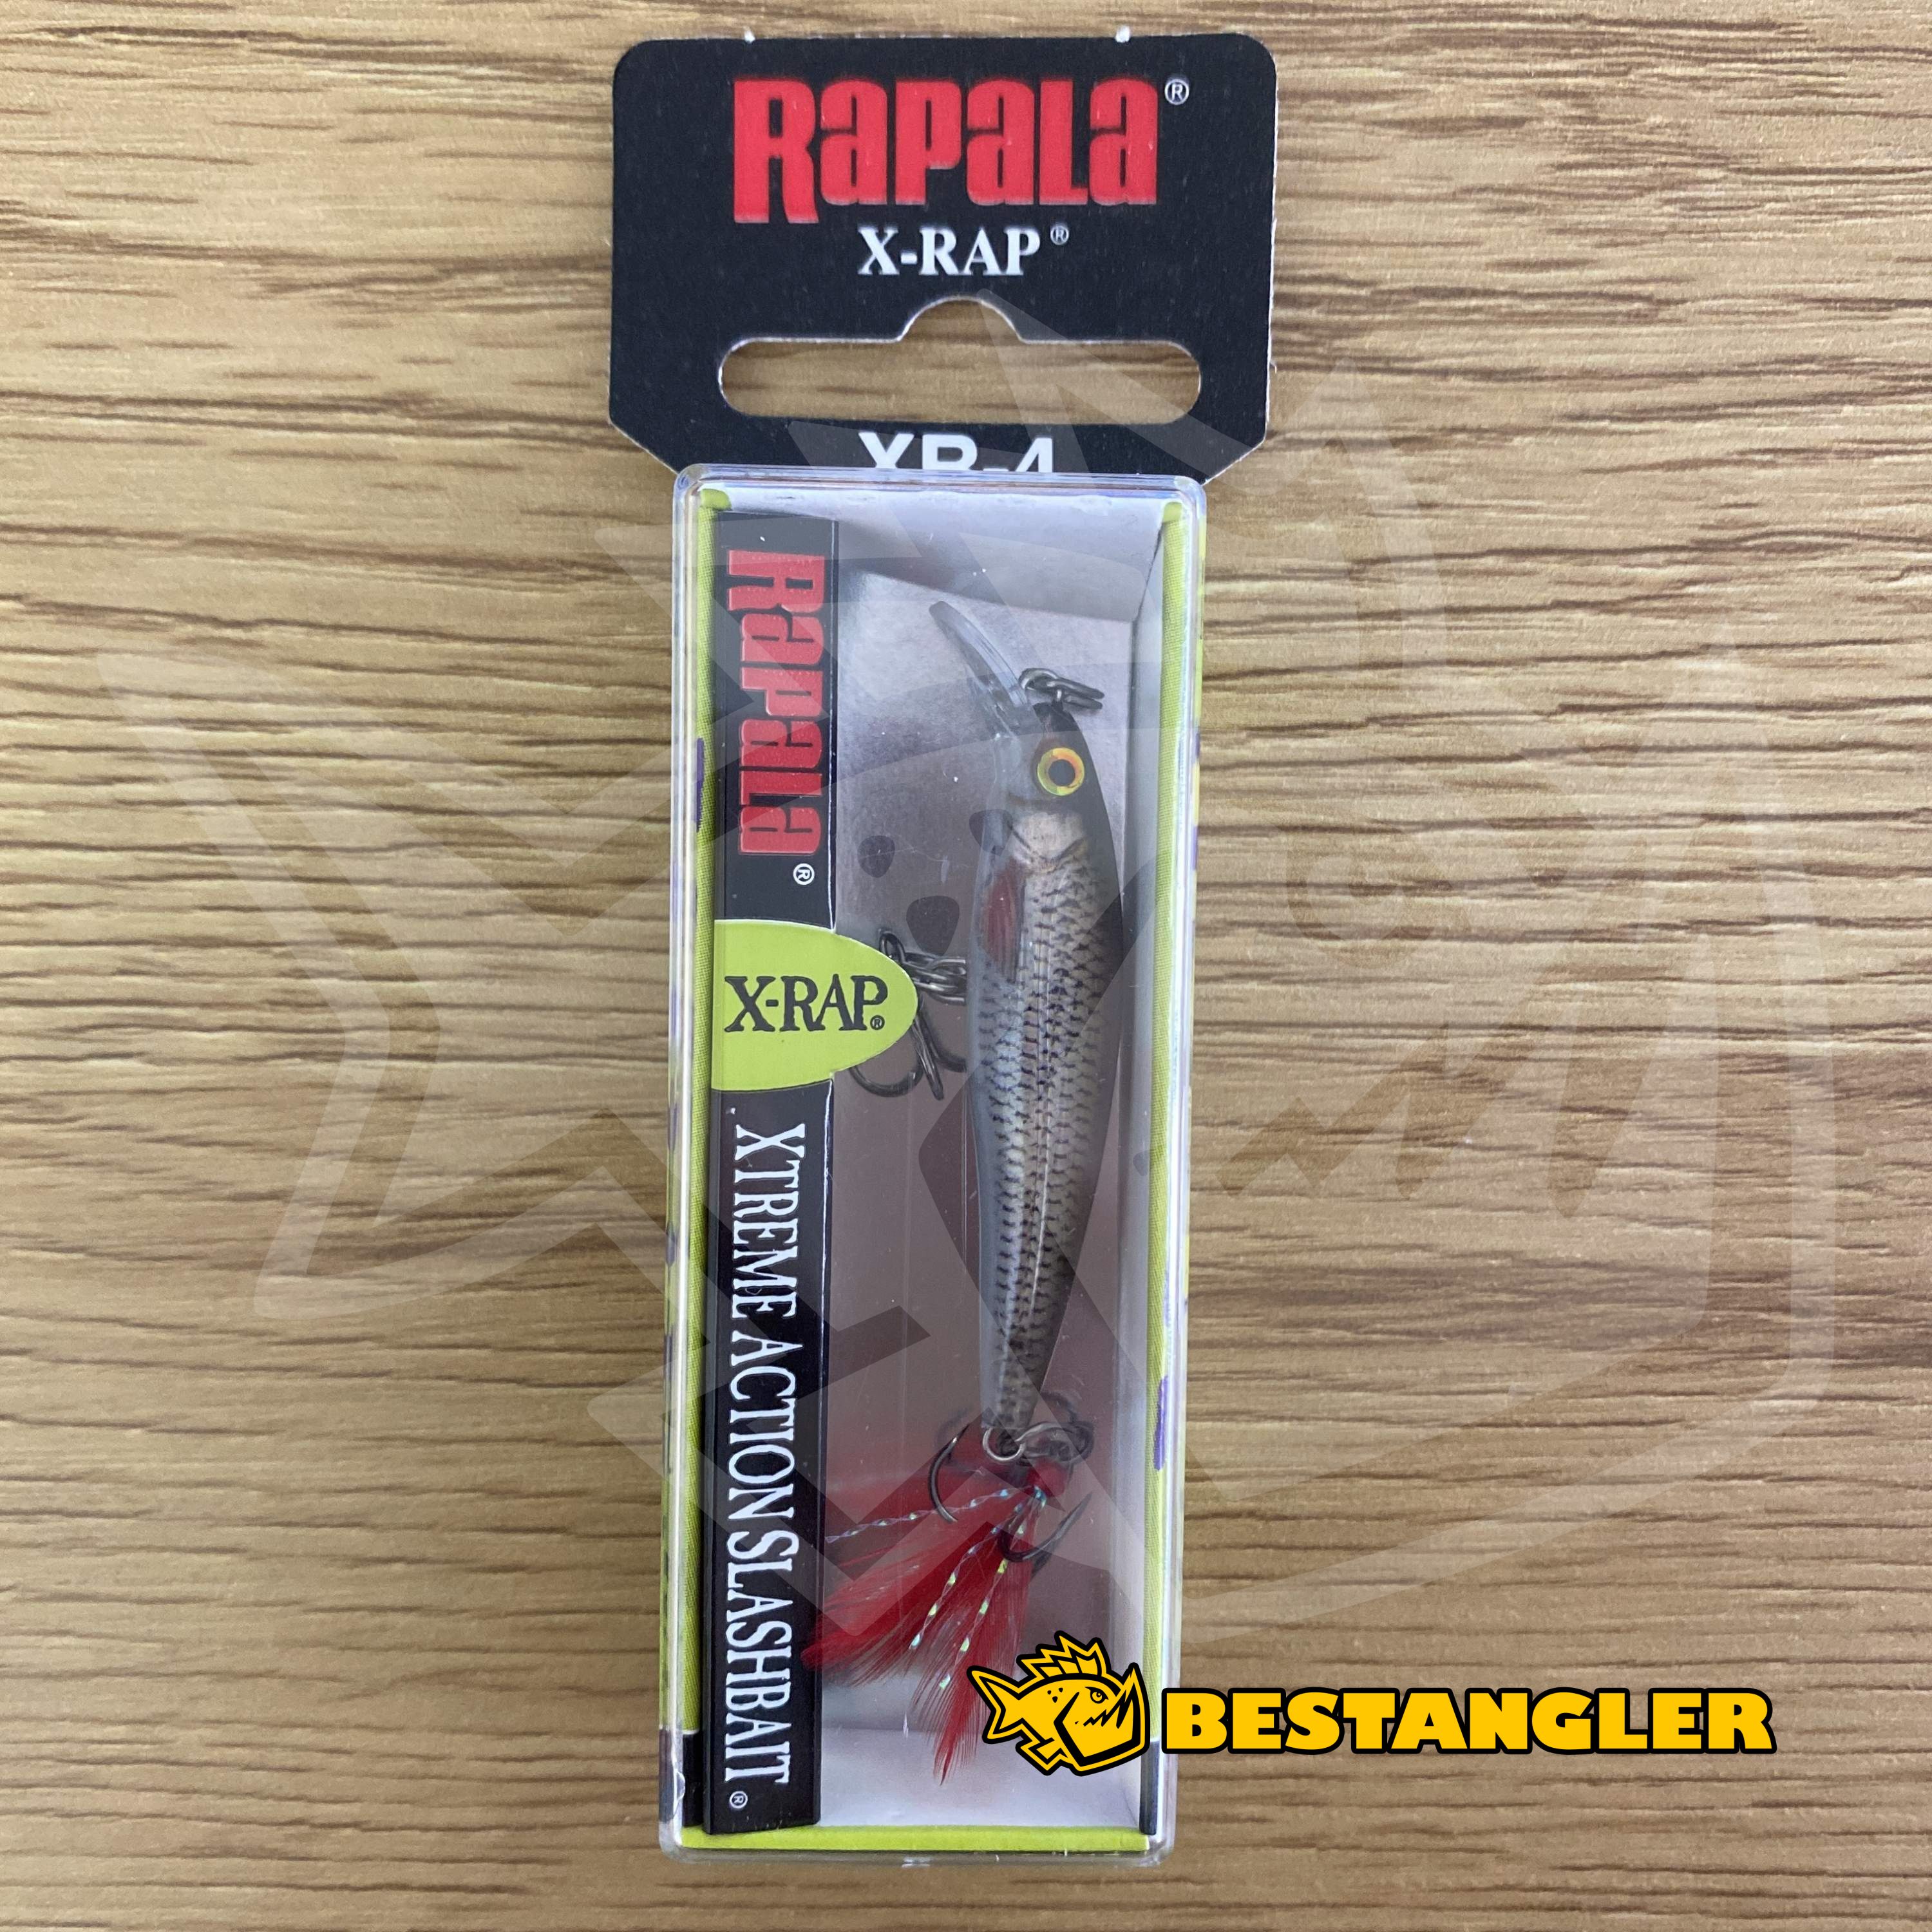 Rapala X-Rap 04 Live Roach